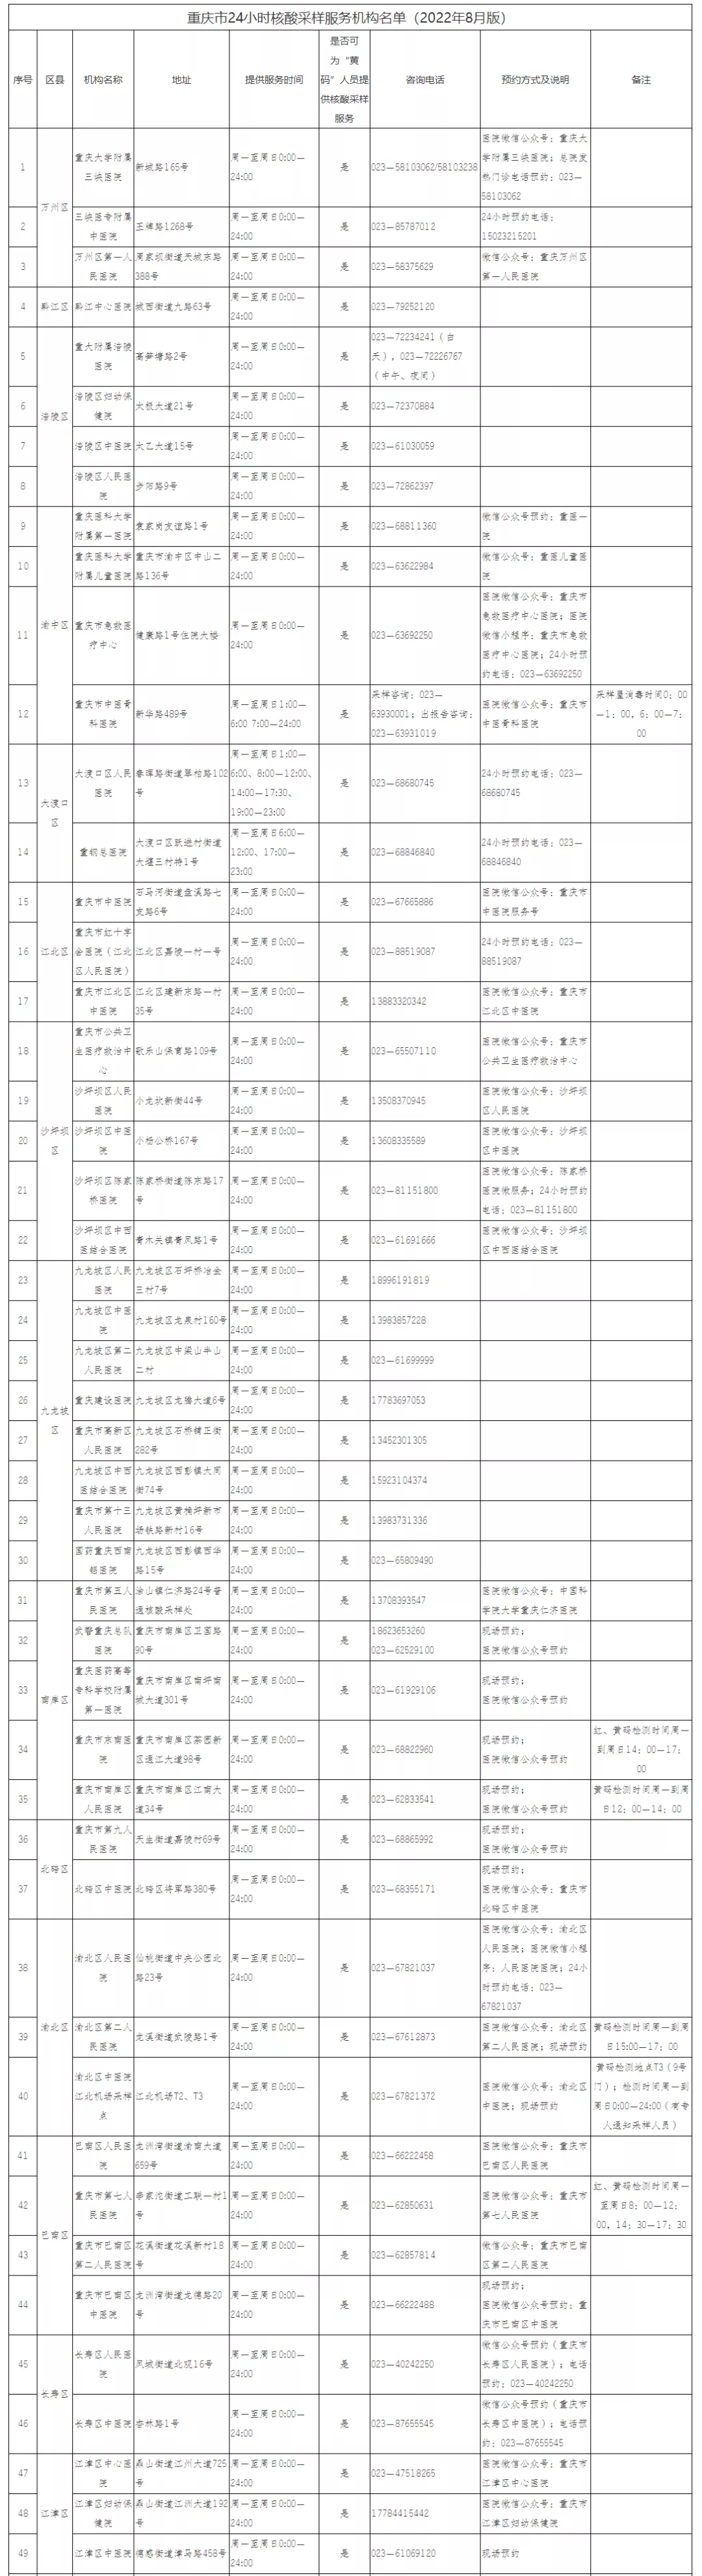 重庆24小时核酸检测服务医疗机构最新名单来了